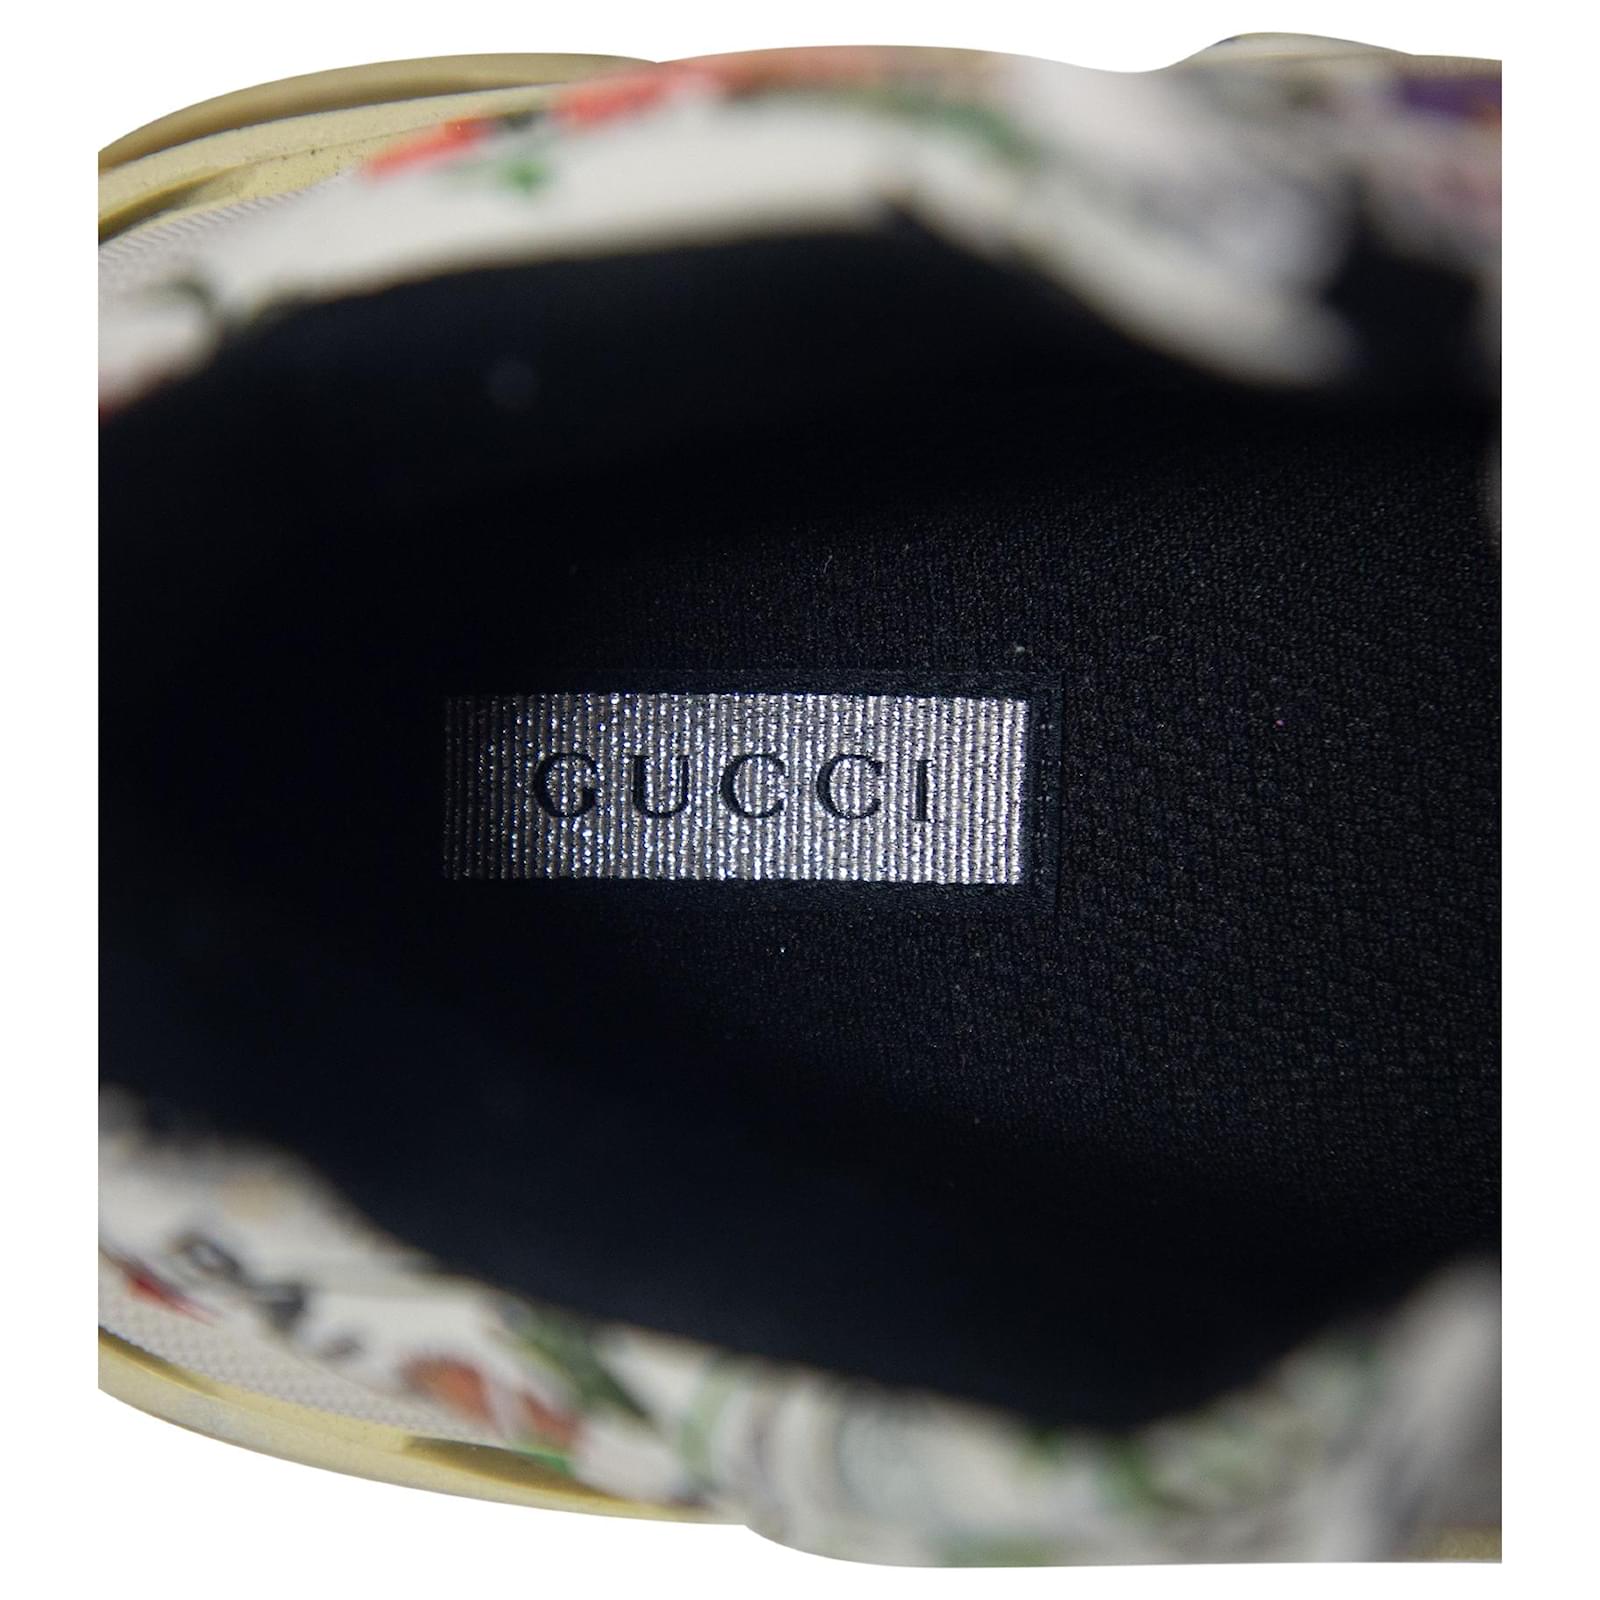 Gucci x Balenciaga Cream Floral Print Leather The Hacker Project Triple S  Sneakers Size 36 Gucci x Balenciaga